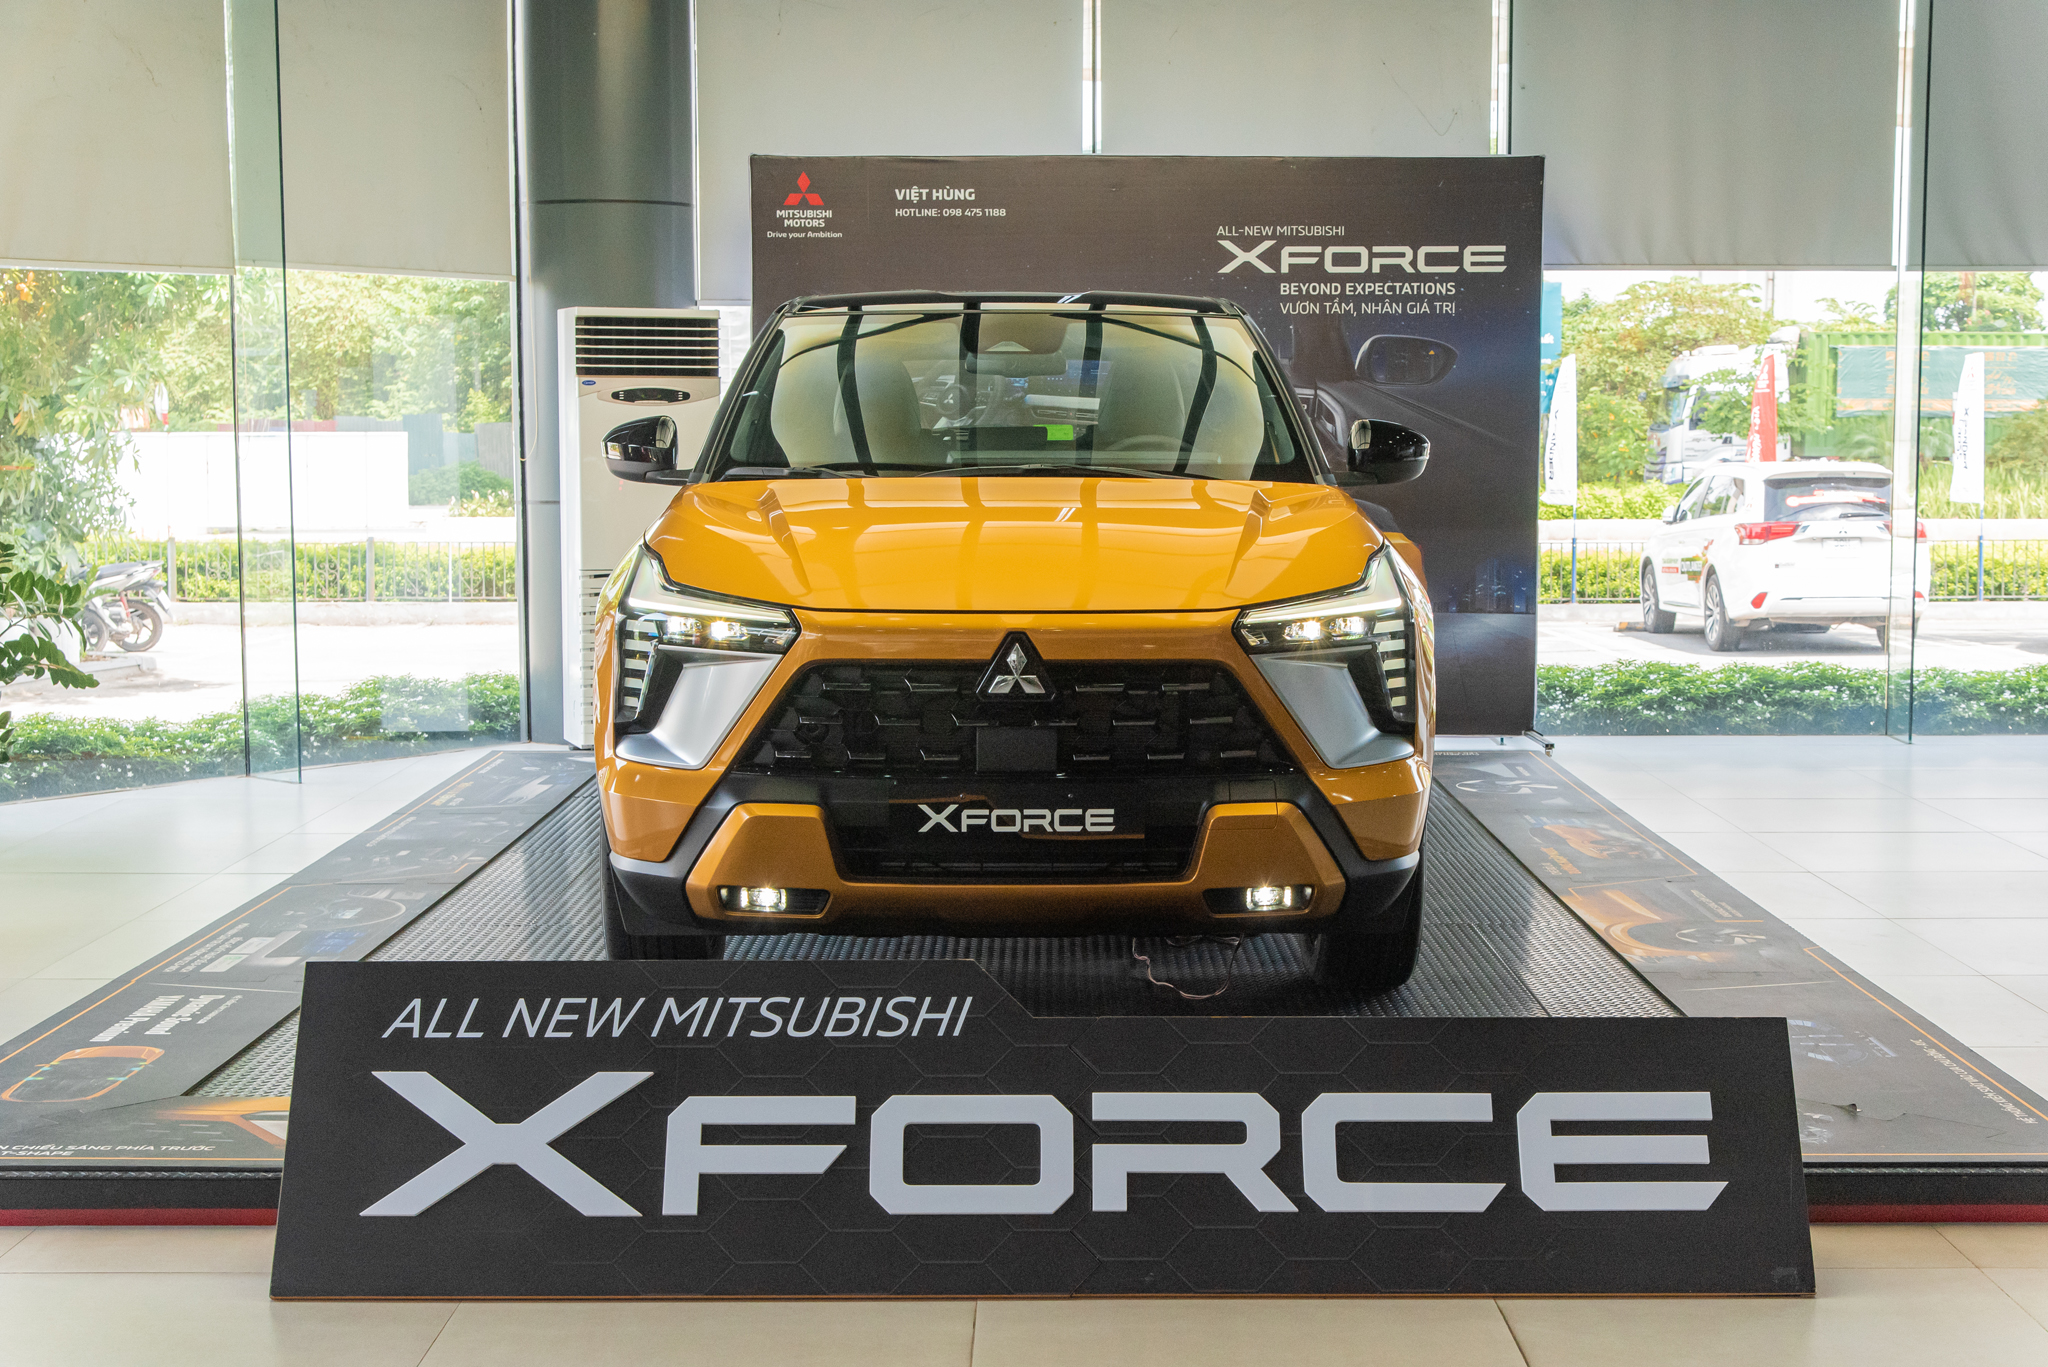 Chi tiết Mitsubishi Xforce Ultimate: Giá từ 705 triệu đồng, thêm 4 điểm quan trọng để đua doanh số cùng Toyota Yaris Cross - Ảnh 2.